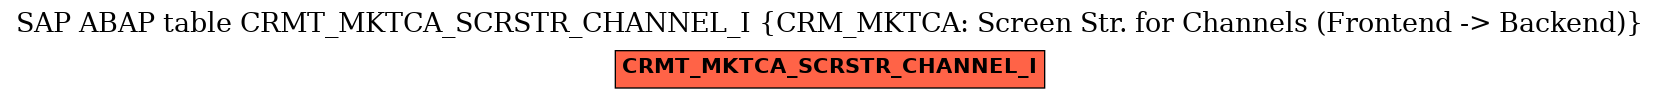 E-R Diagram for table CRMT_MKTCA_SCRSTR_CHANNEL_I (CRM_MKTCA: Screen Str. for Channels (Frontend -> Backend))